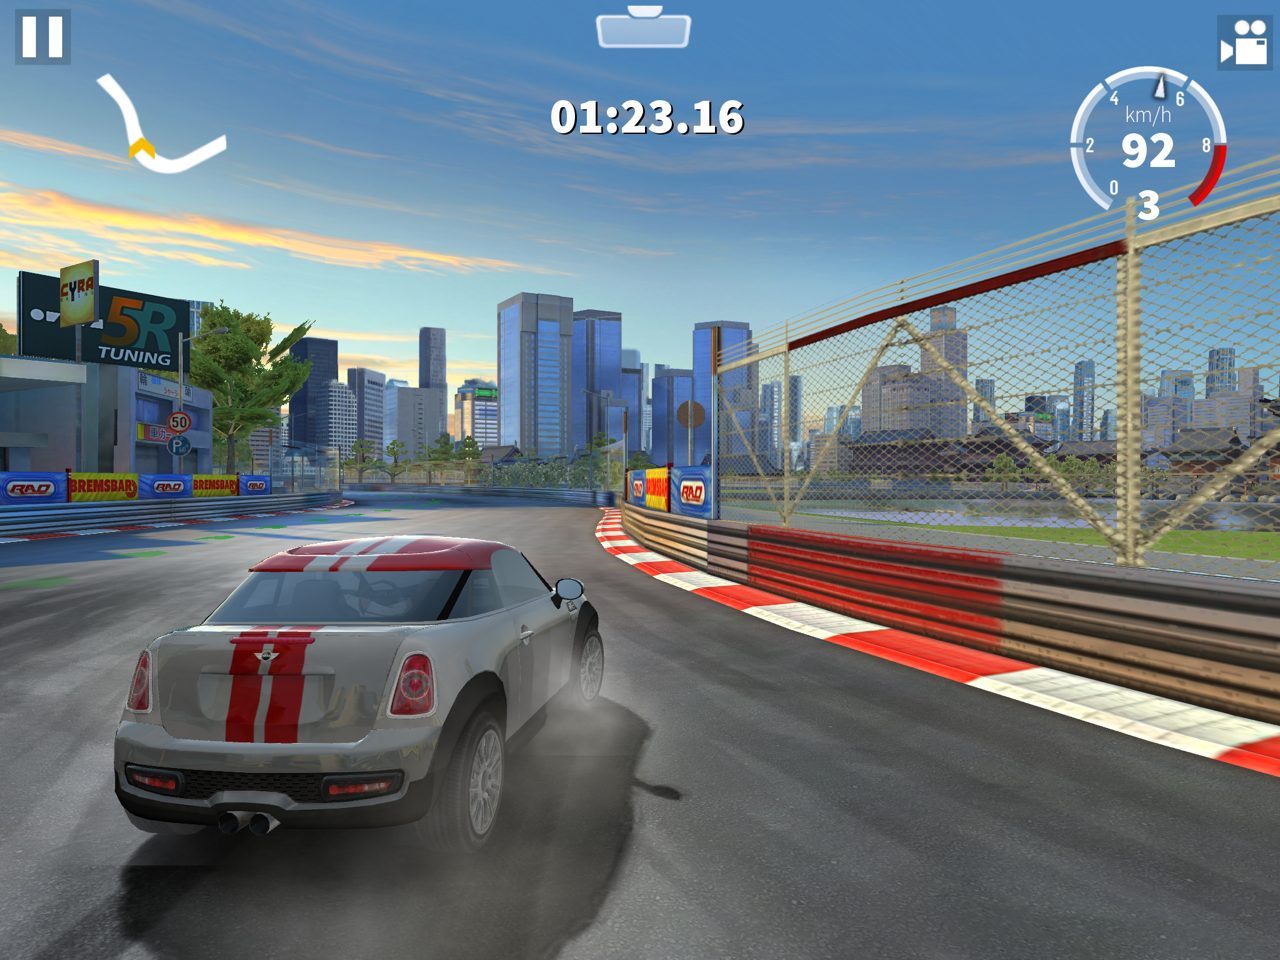 jeu de course automobile ‒ Applications sur Google Play